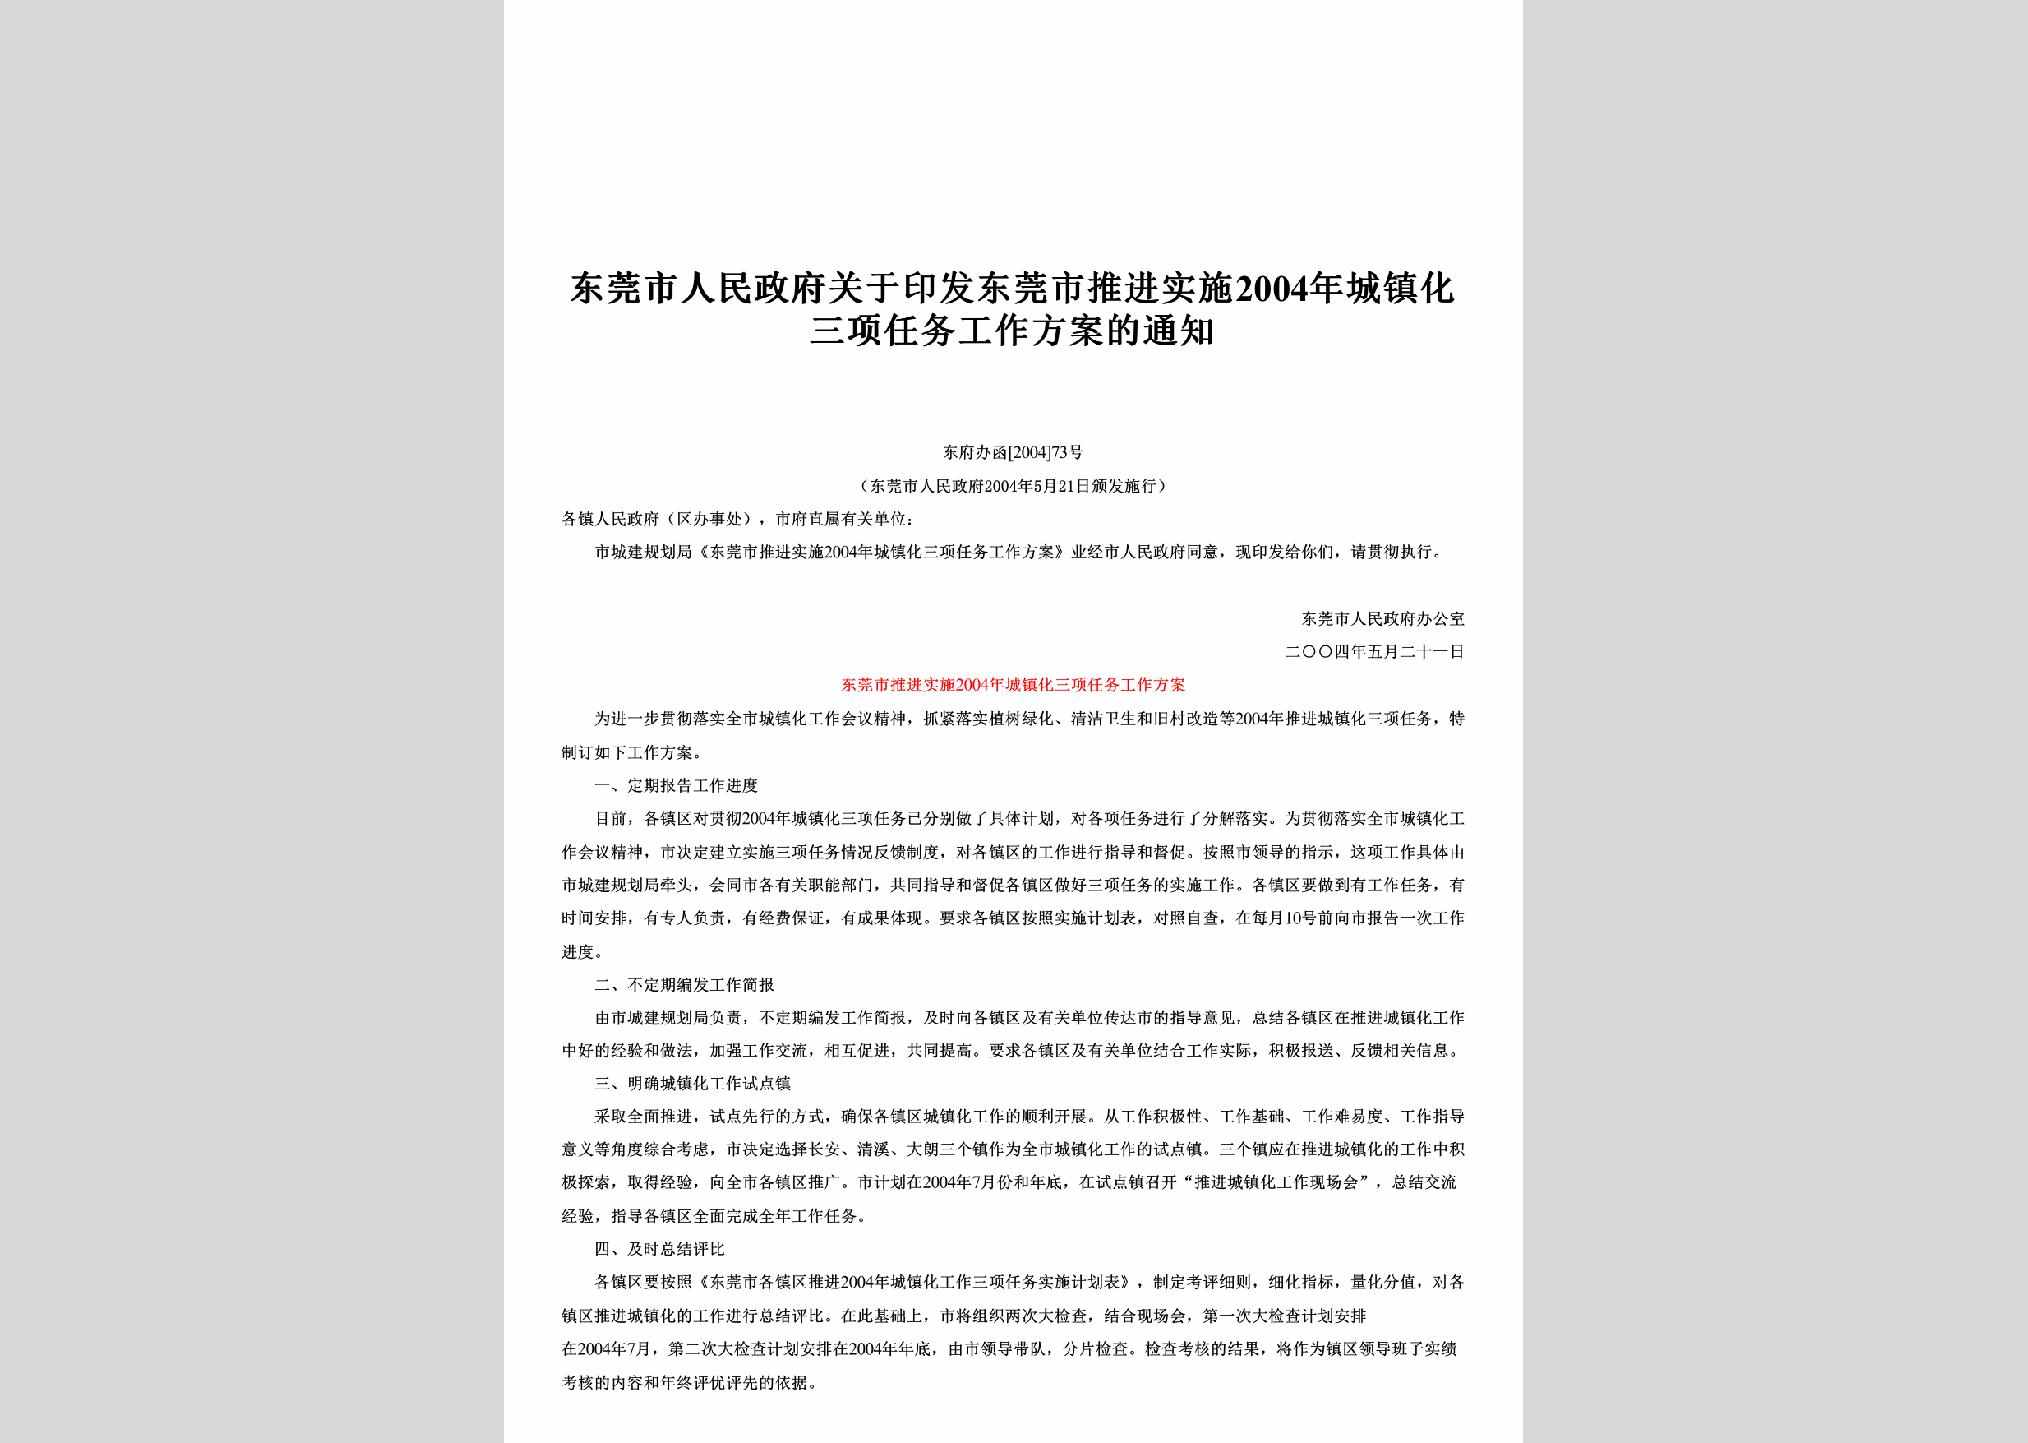 东府办函[2004]73号：关于印发东莞市推进实施2004年城镇化三项任务工作方案的通知